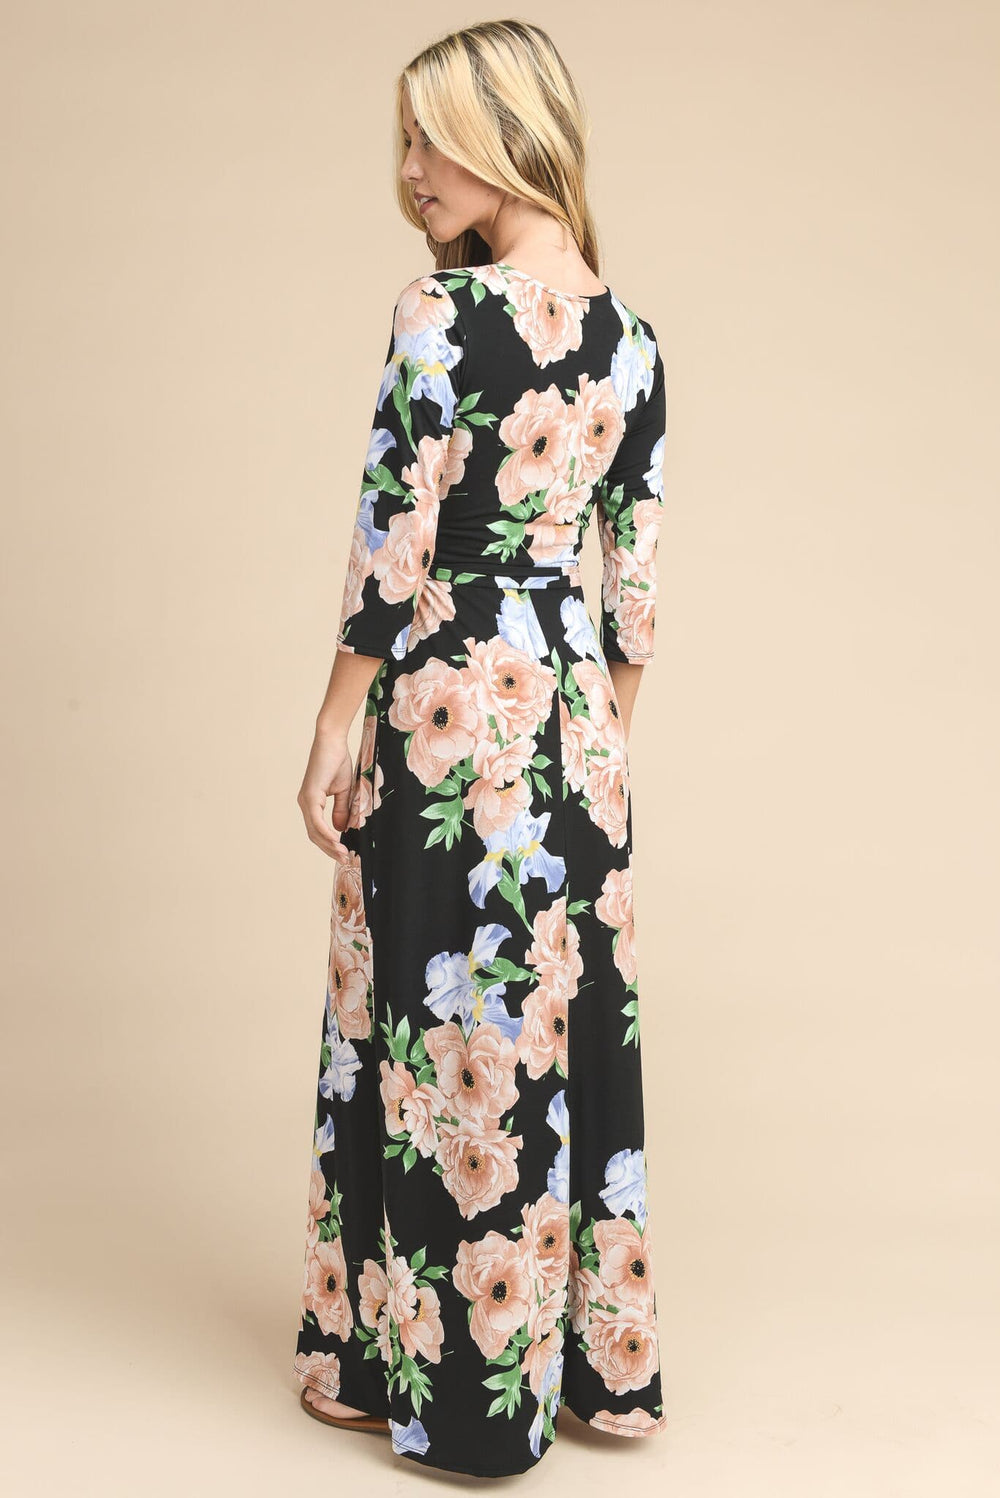 Destiny's Floral Wrap Maxi Dress - Vanilla Bay